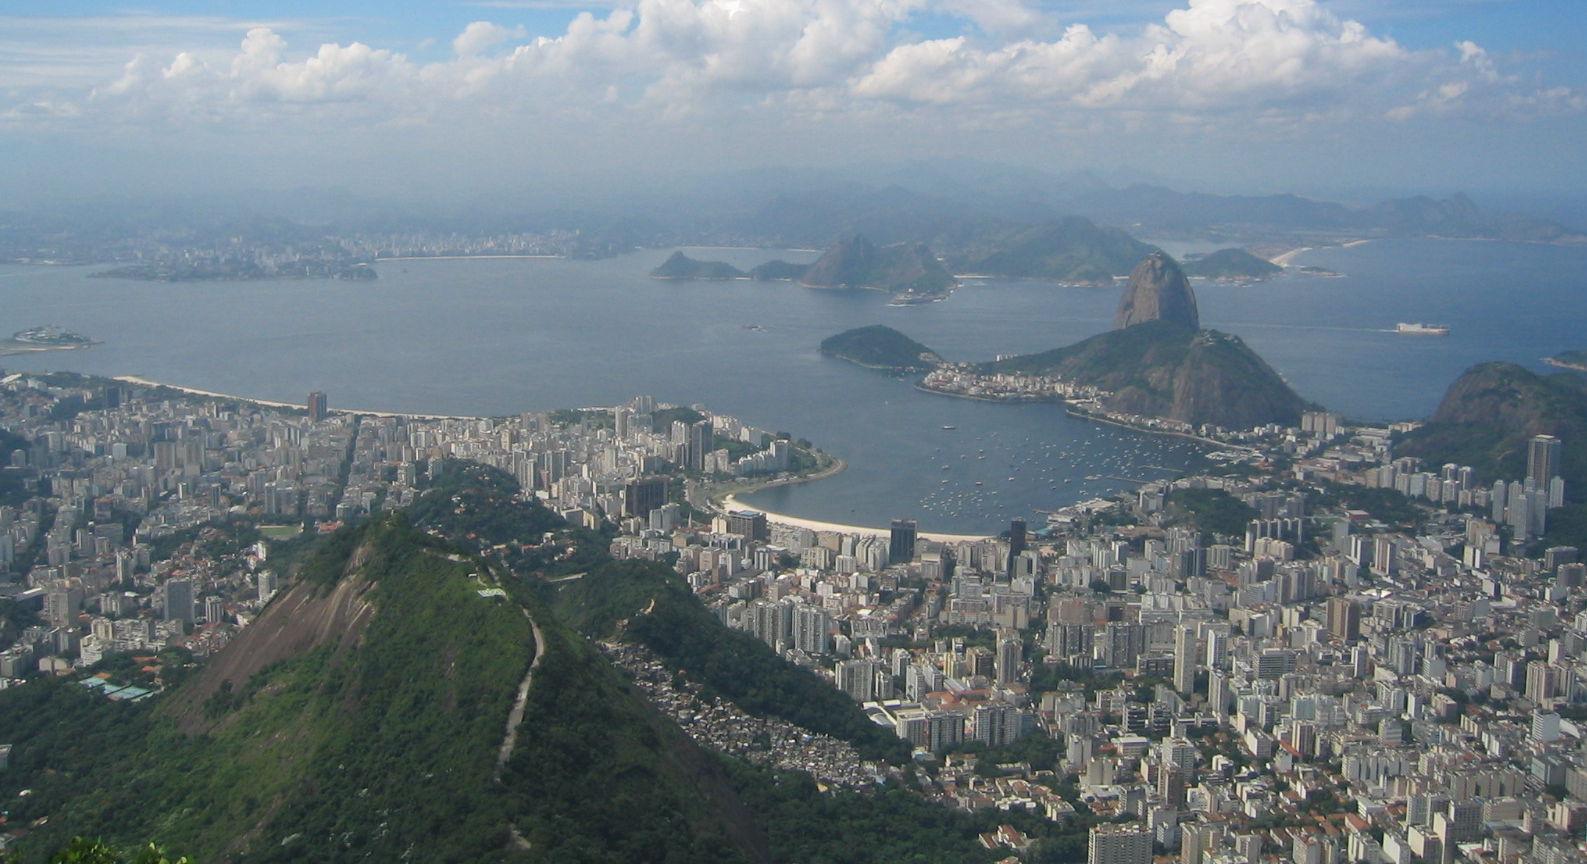 O Rio de Janeiro foi o município da região metropolitana que concentrou o maior número de agentes baleados – foram 97 no total